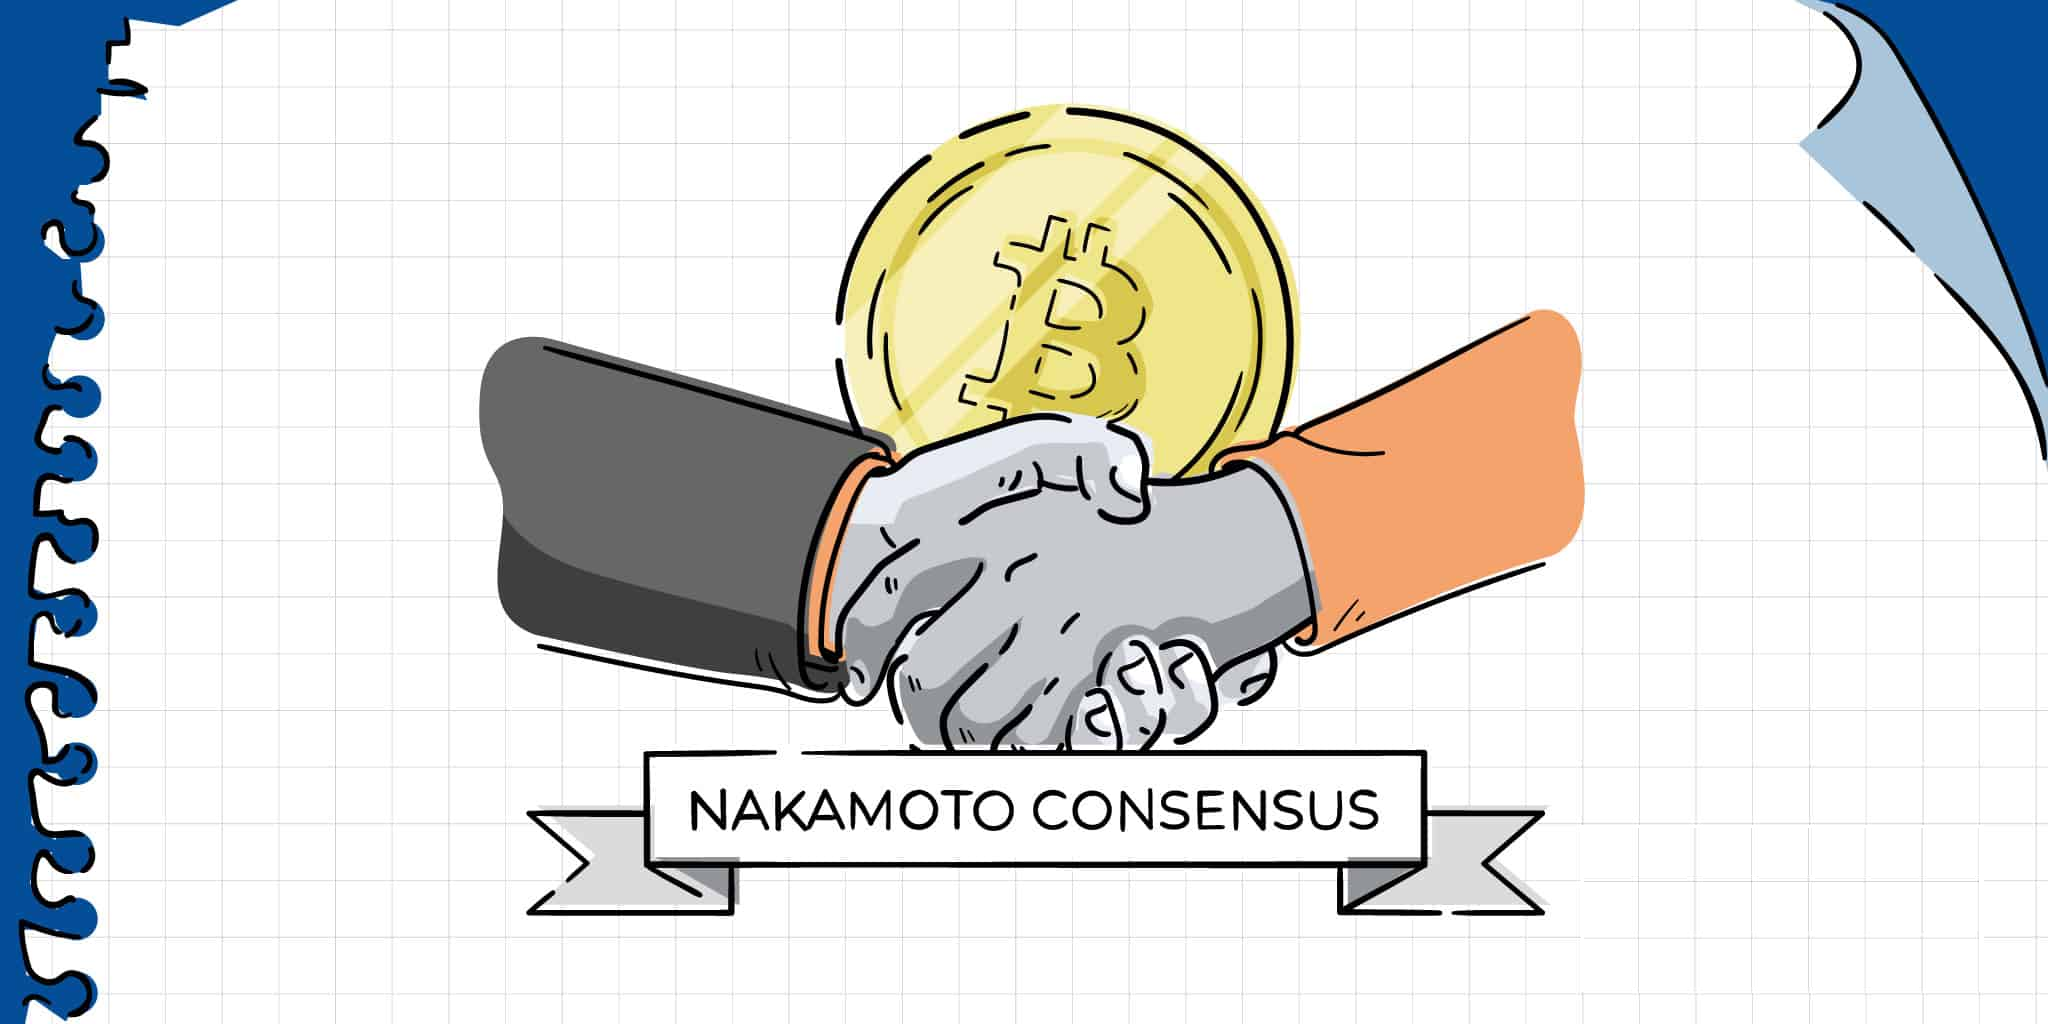 Découvrez le consensus de Nakamoto